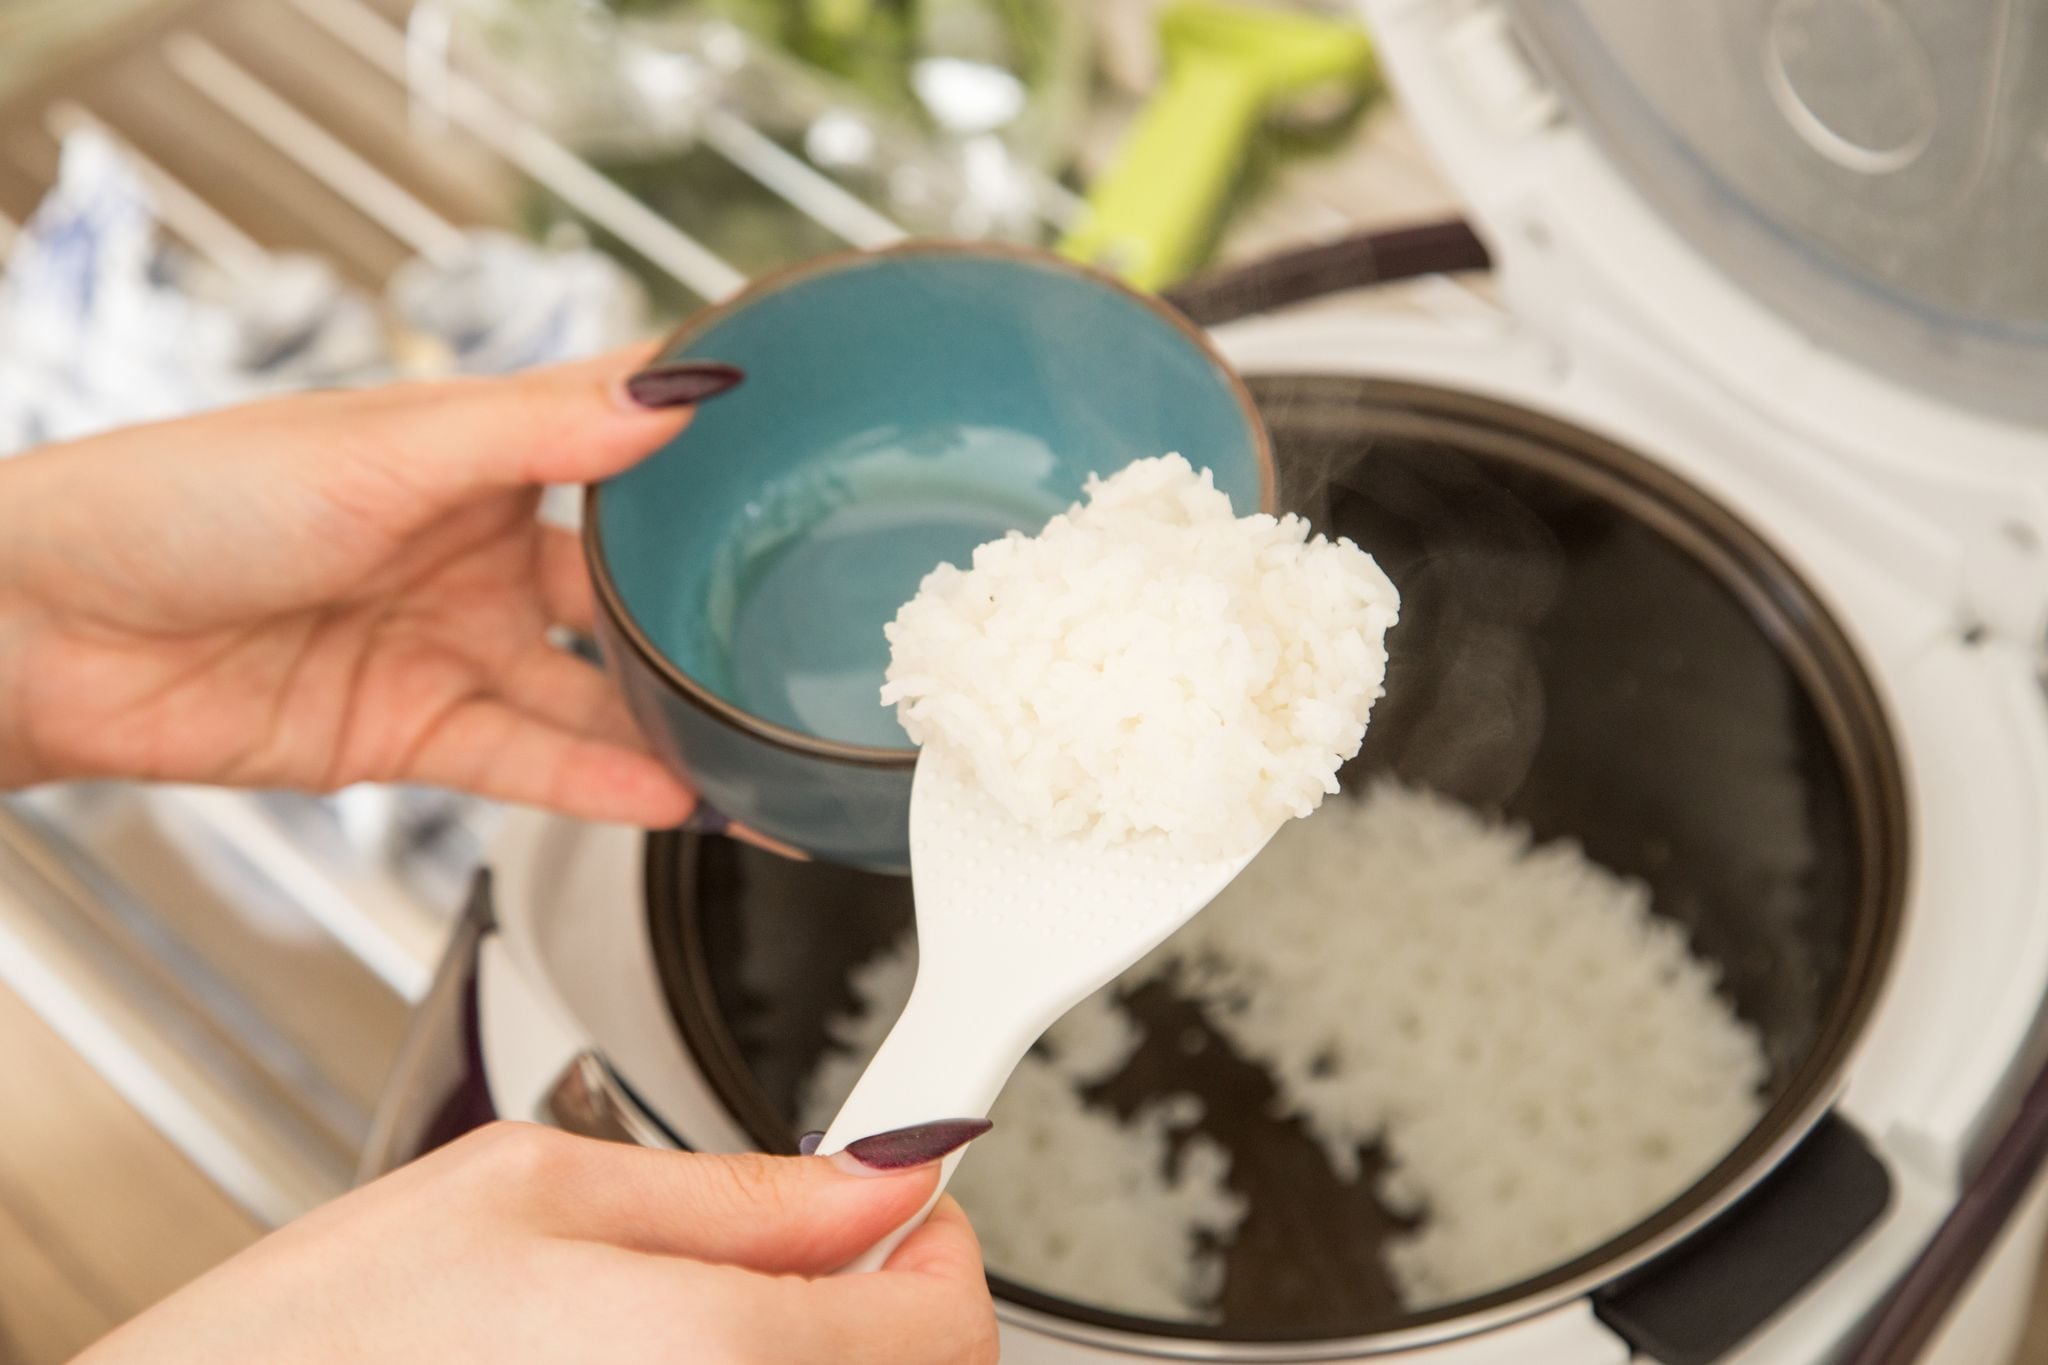 ¿Qué pasaría si pudiéramos disfrutar de los beneficios nutricionales del arroz sin las calorías adicionales? Un equipo de investigadores en Sri Lanka logró advertirlo 
Foto: Christin Klose/dpa